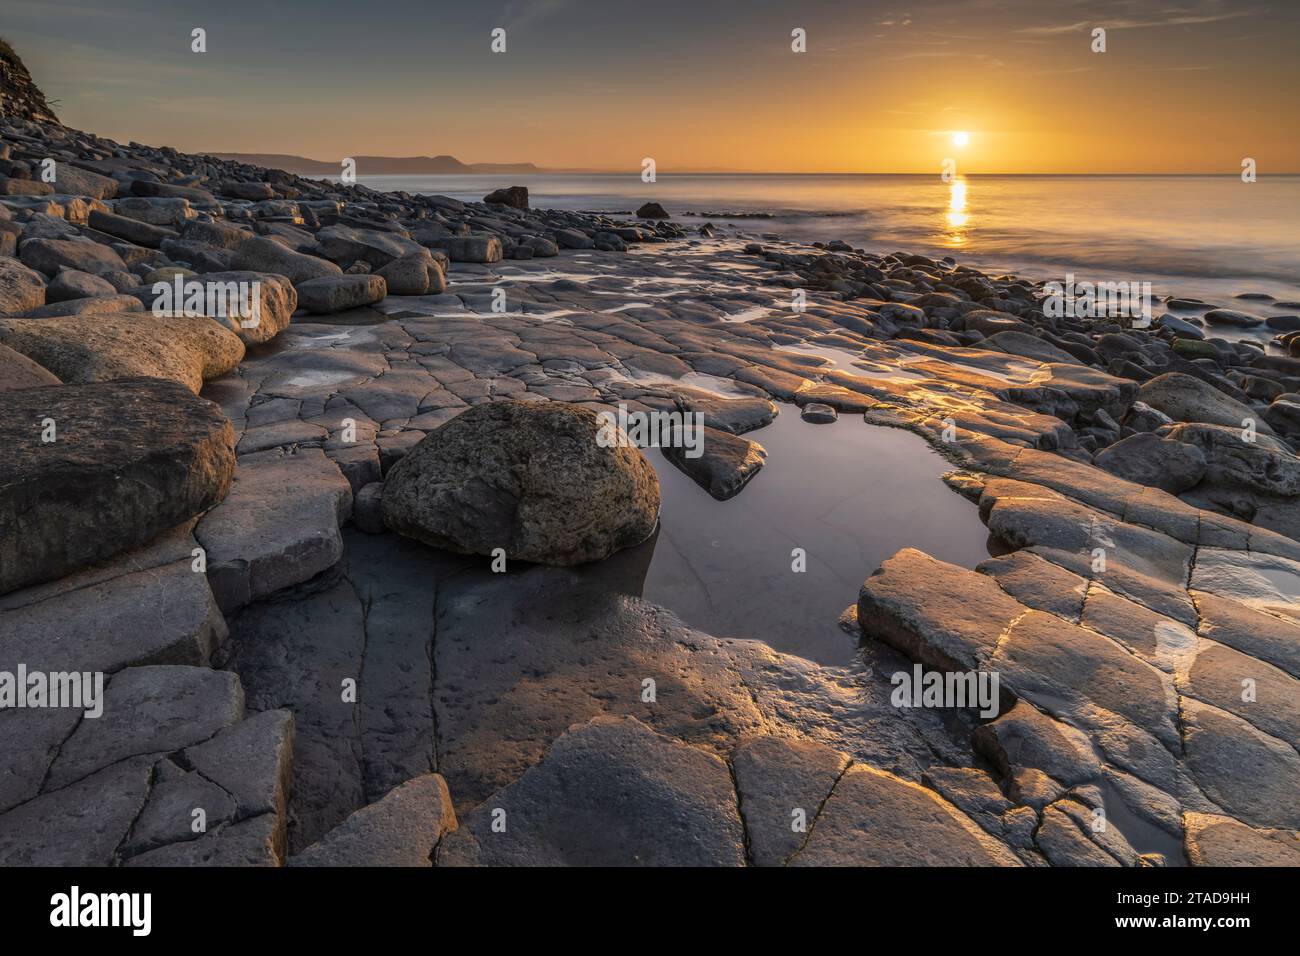 Lever du soleil sur la baie de Lyme depuis le trottoir Ammonite, Lyme Regis, Dorset, Angleterre. Hiver (février) 2022. Banque D'Images